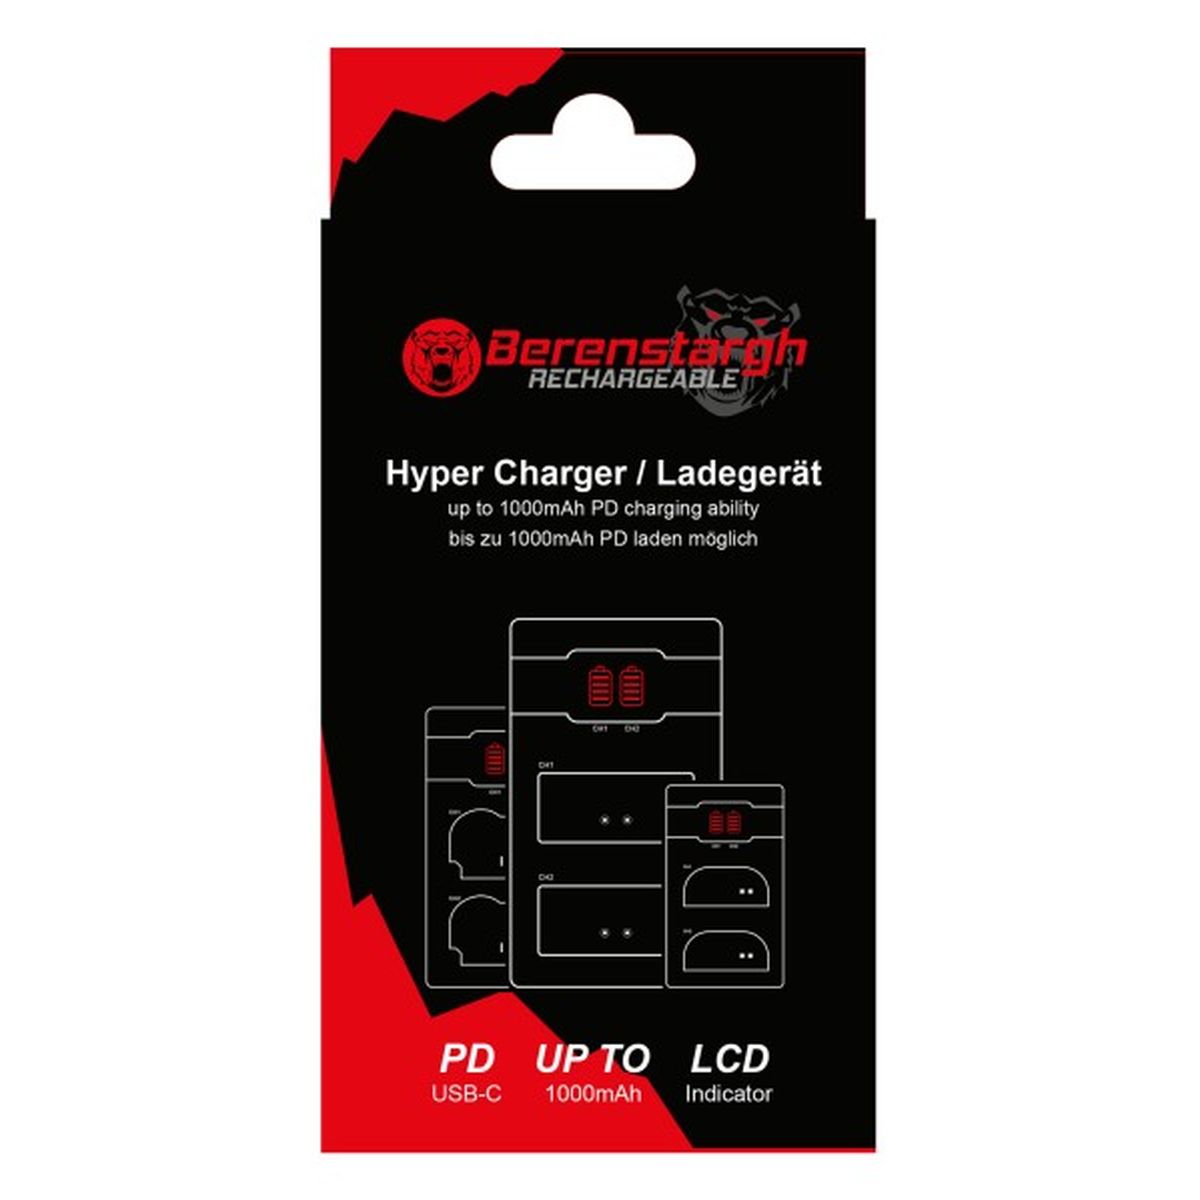 Berenstargh Hyper PD Ladegerät für Fuji NP-W235 Fujifilm inkl. USB-C Kabel